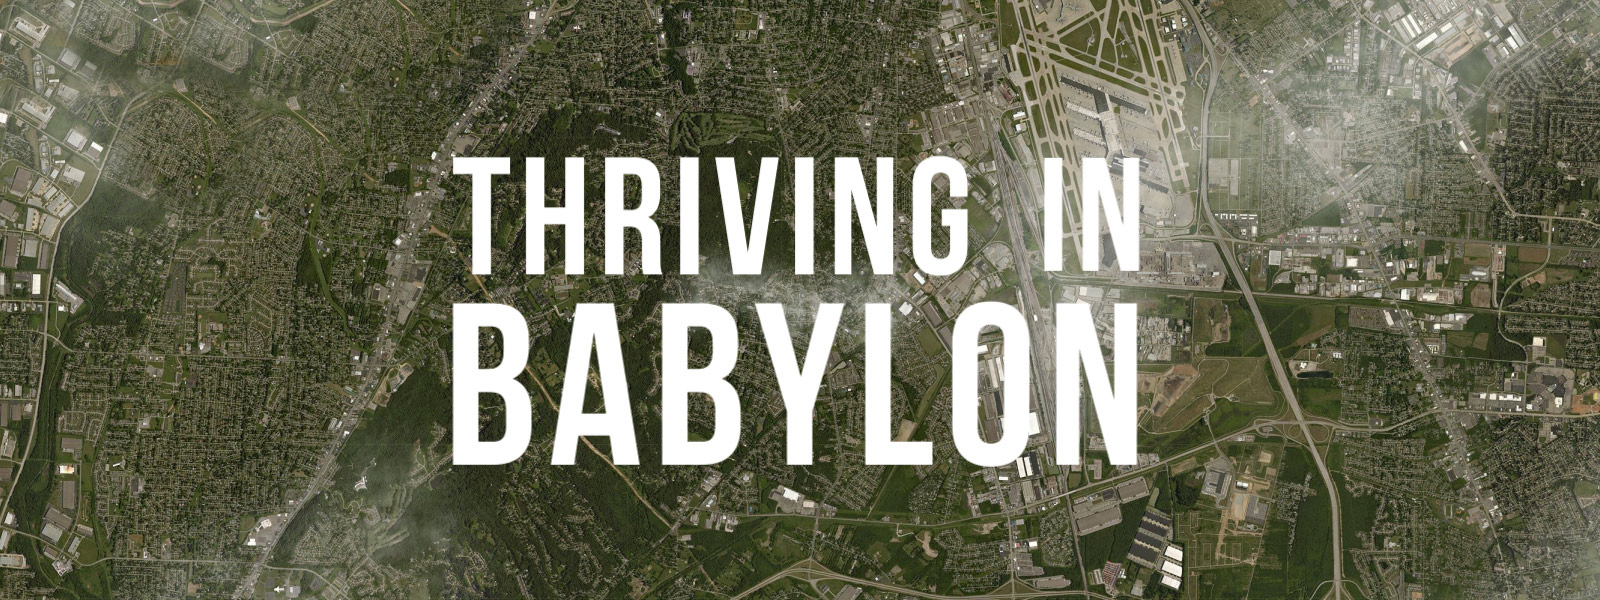 Thriving in Babylon: Part 2